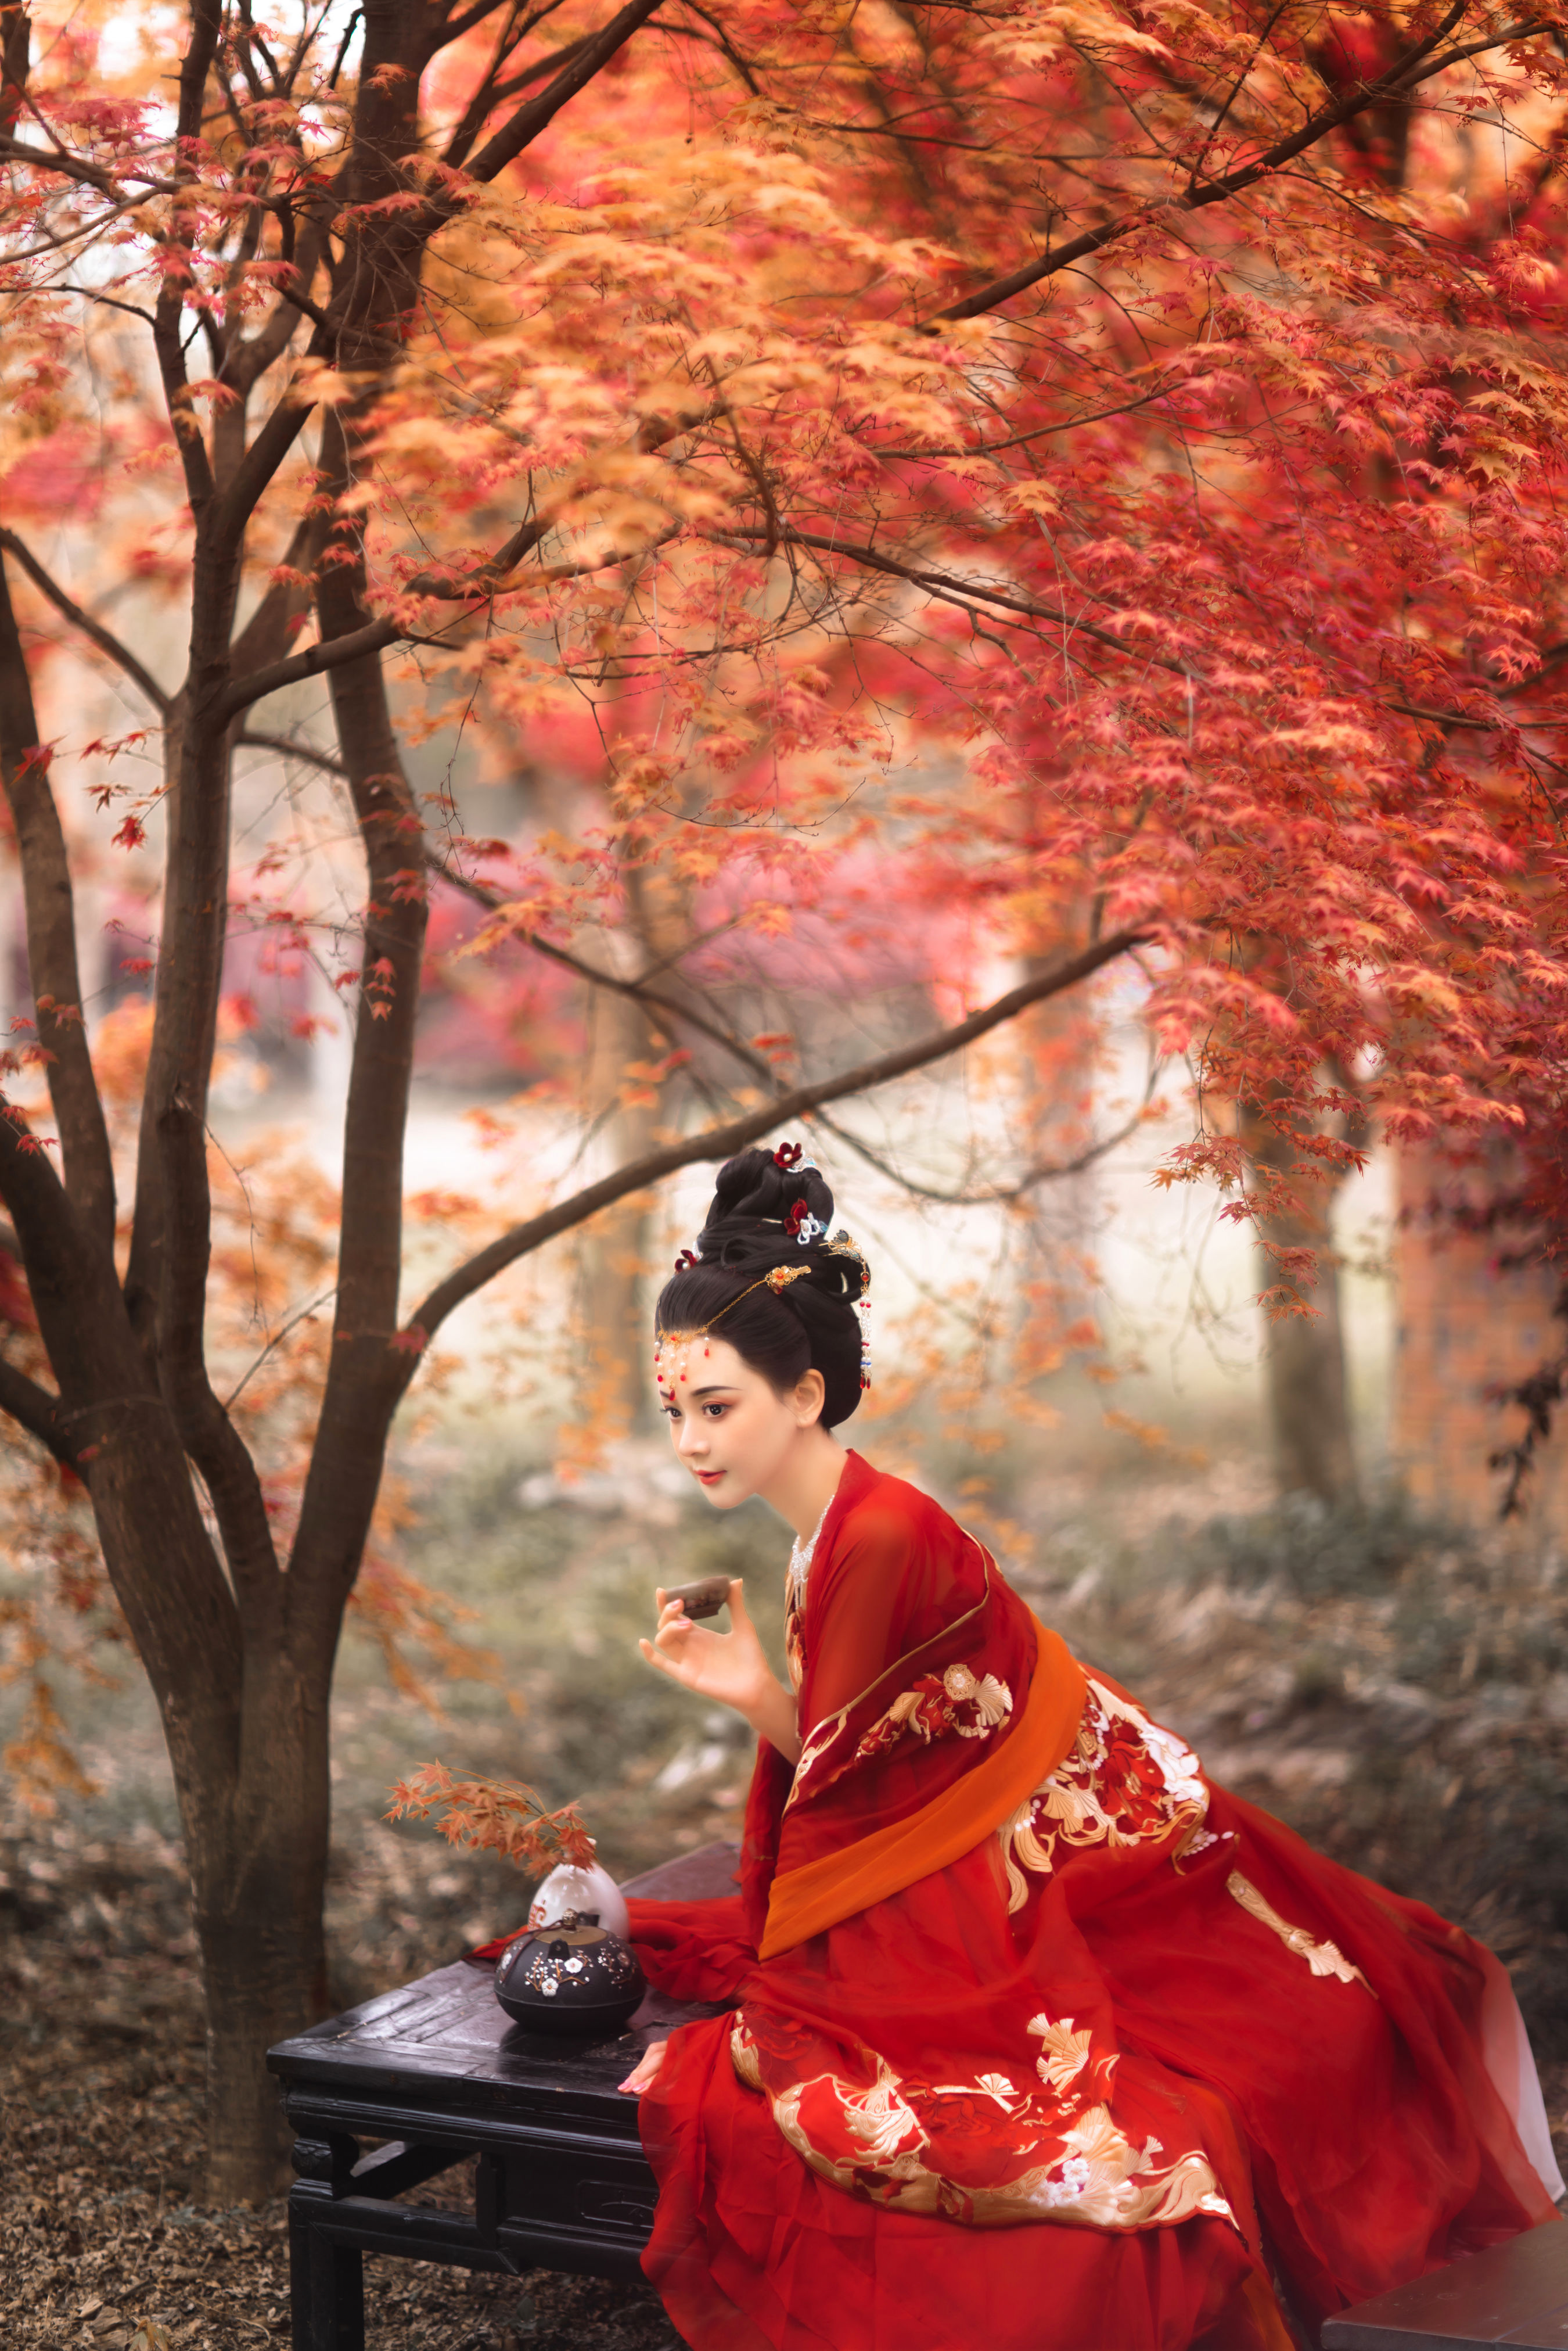 春不老 古典 意境 中国风 古风 唯美 禅意 红色 树林 枫树 枫叶